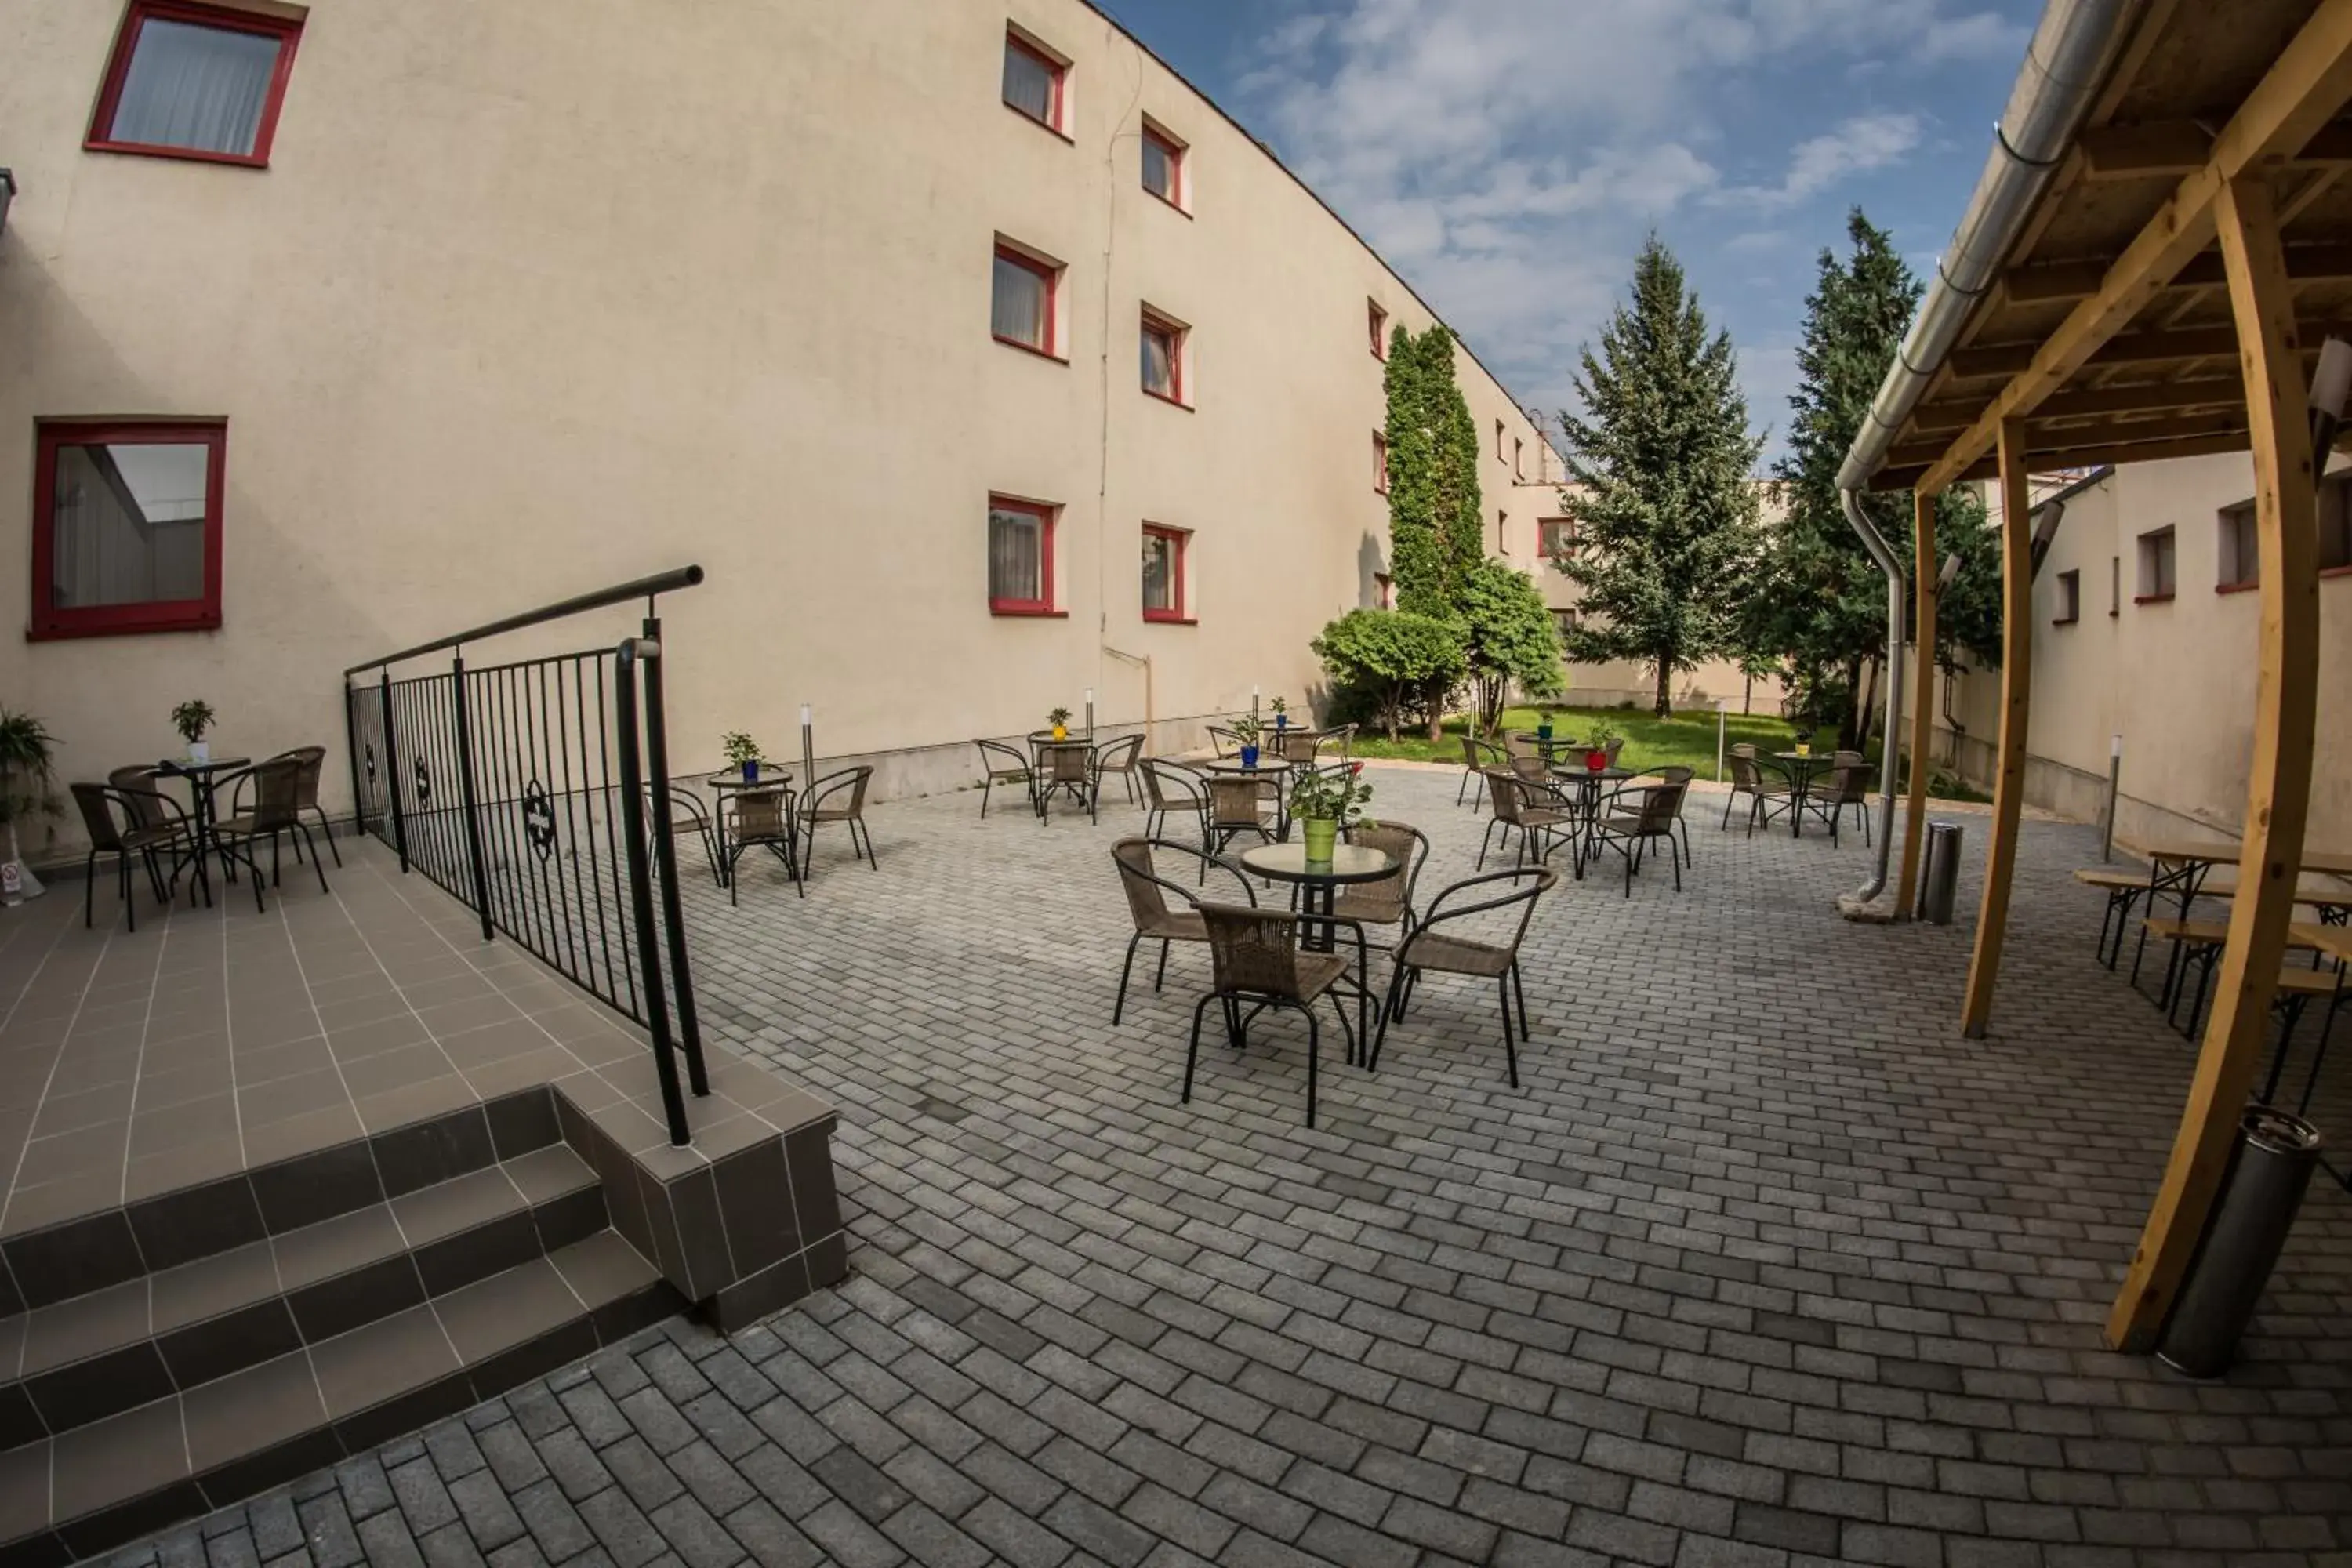 Garden, Patio/Outdoor Area in Homoky Hotels Bestline Hotel